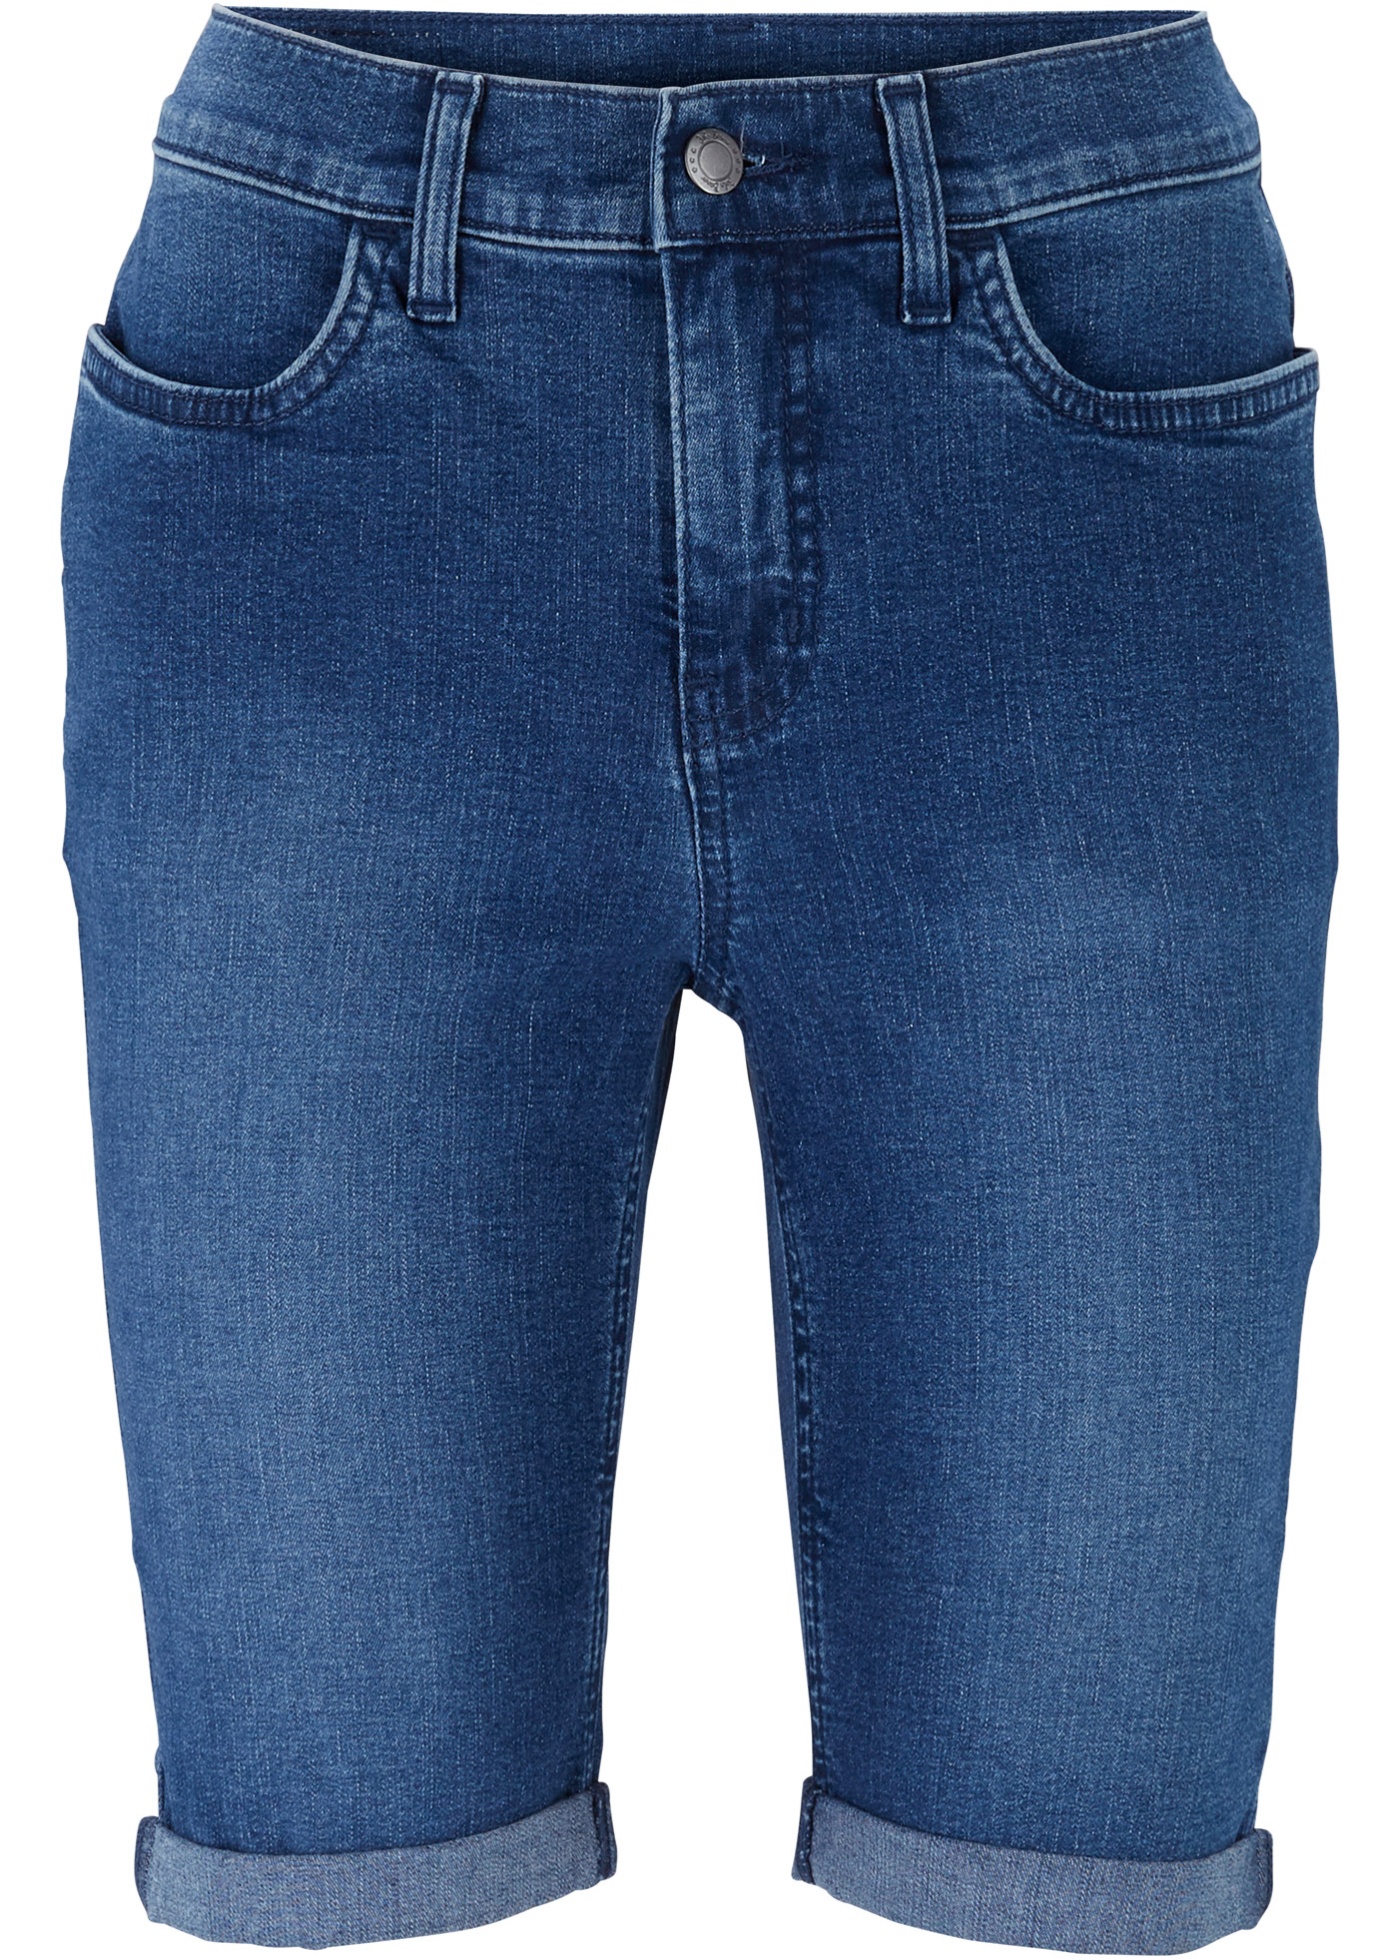 Ultra-Soft-Jeans-Bermuda